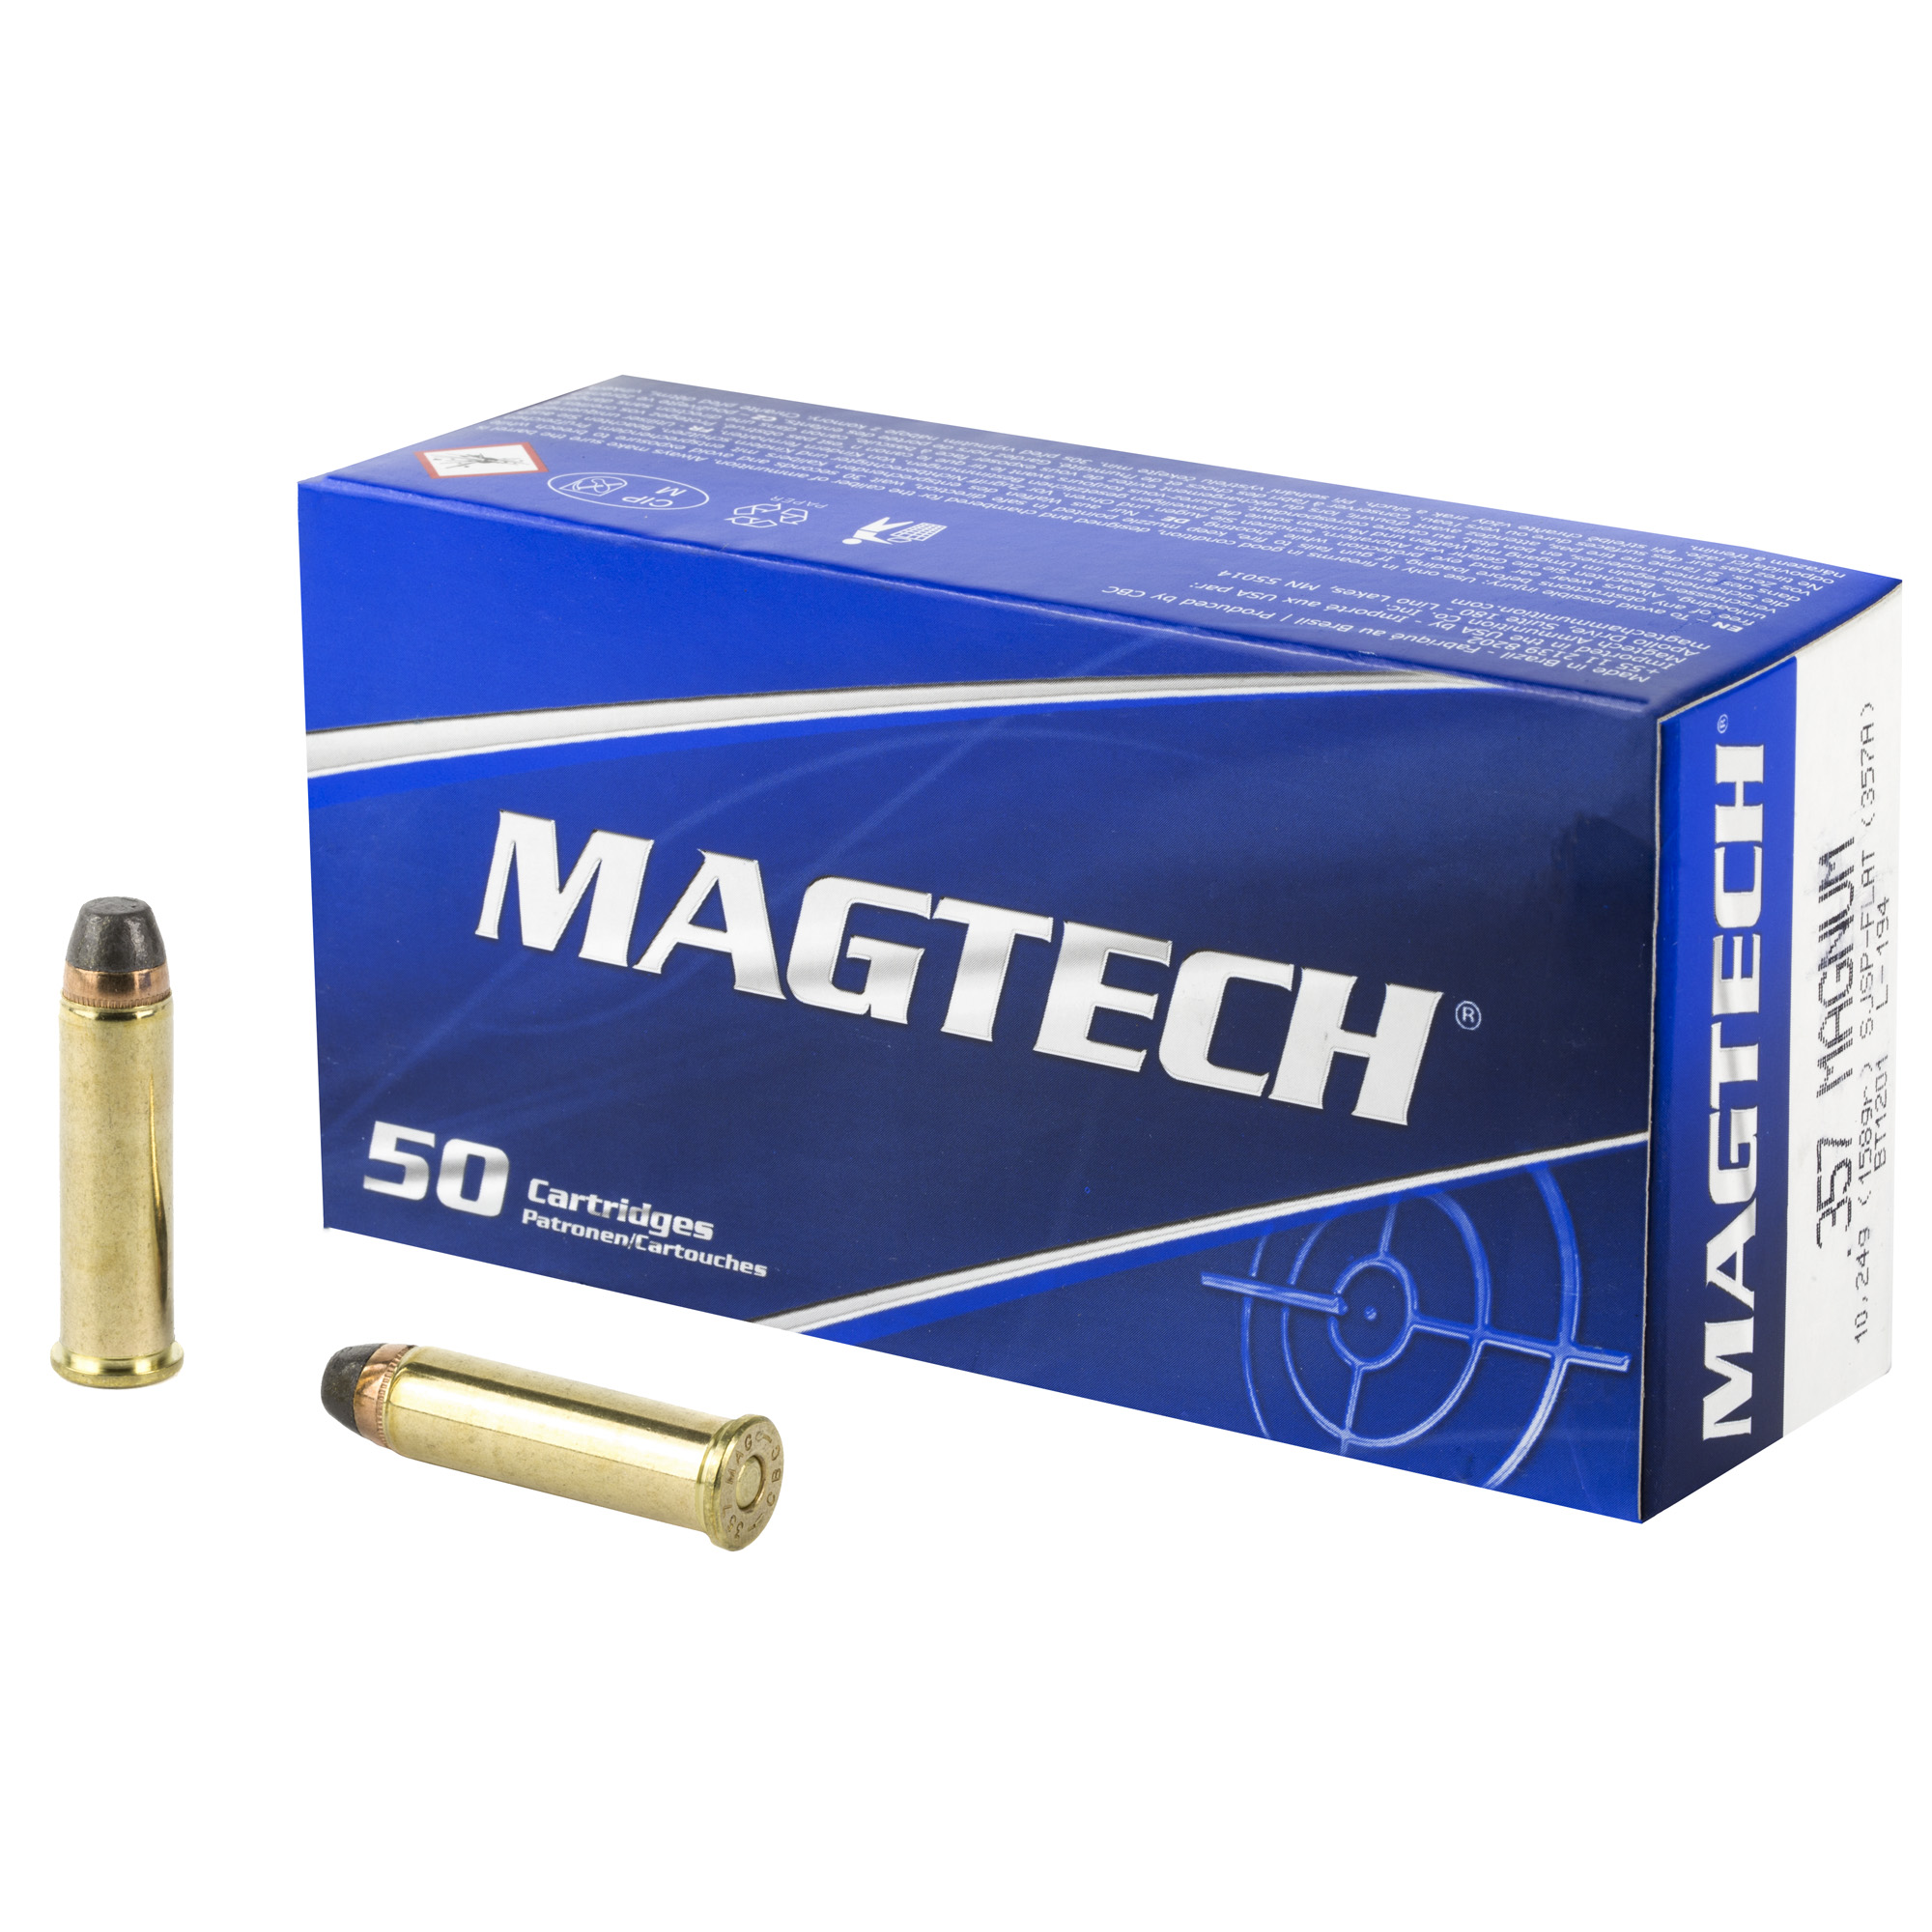 Magtech Sport Shooting 357 Magnum Ammo 158 Grain Semi JSP FN 50 Rounds, 357A, UPC: 754908110018,